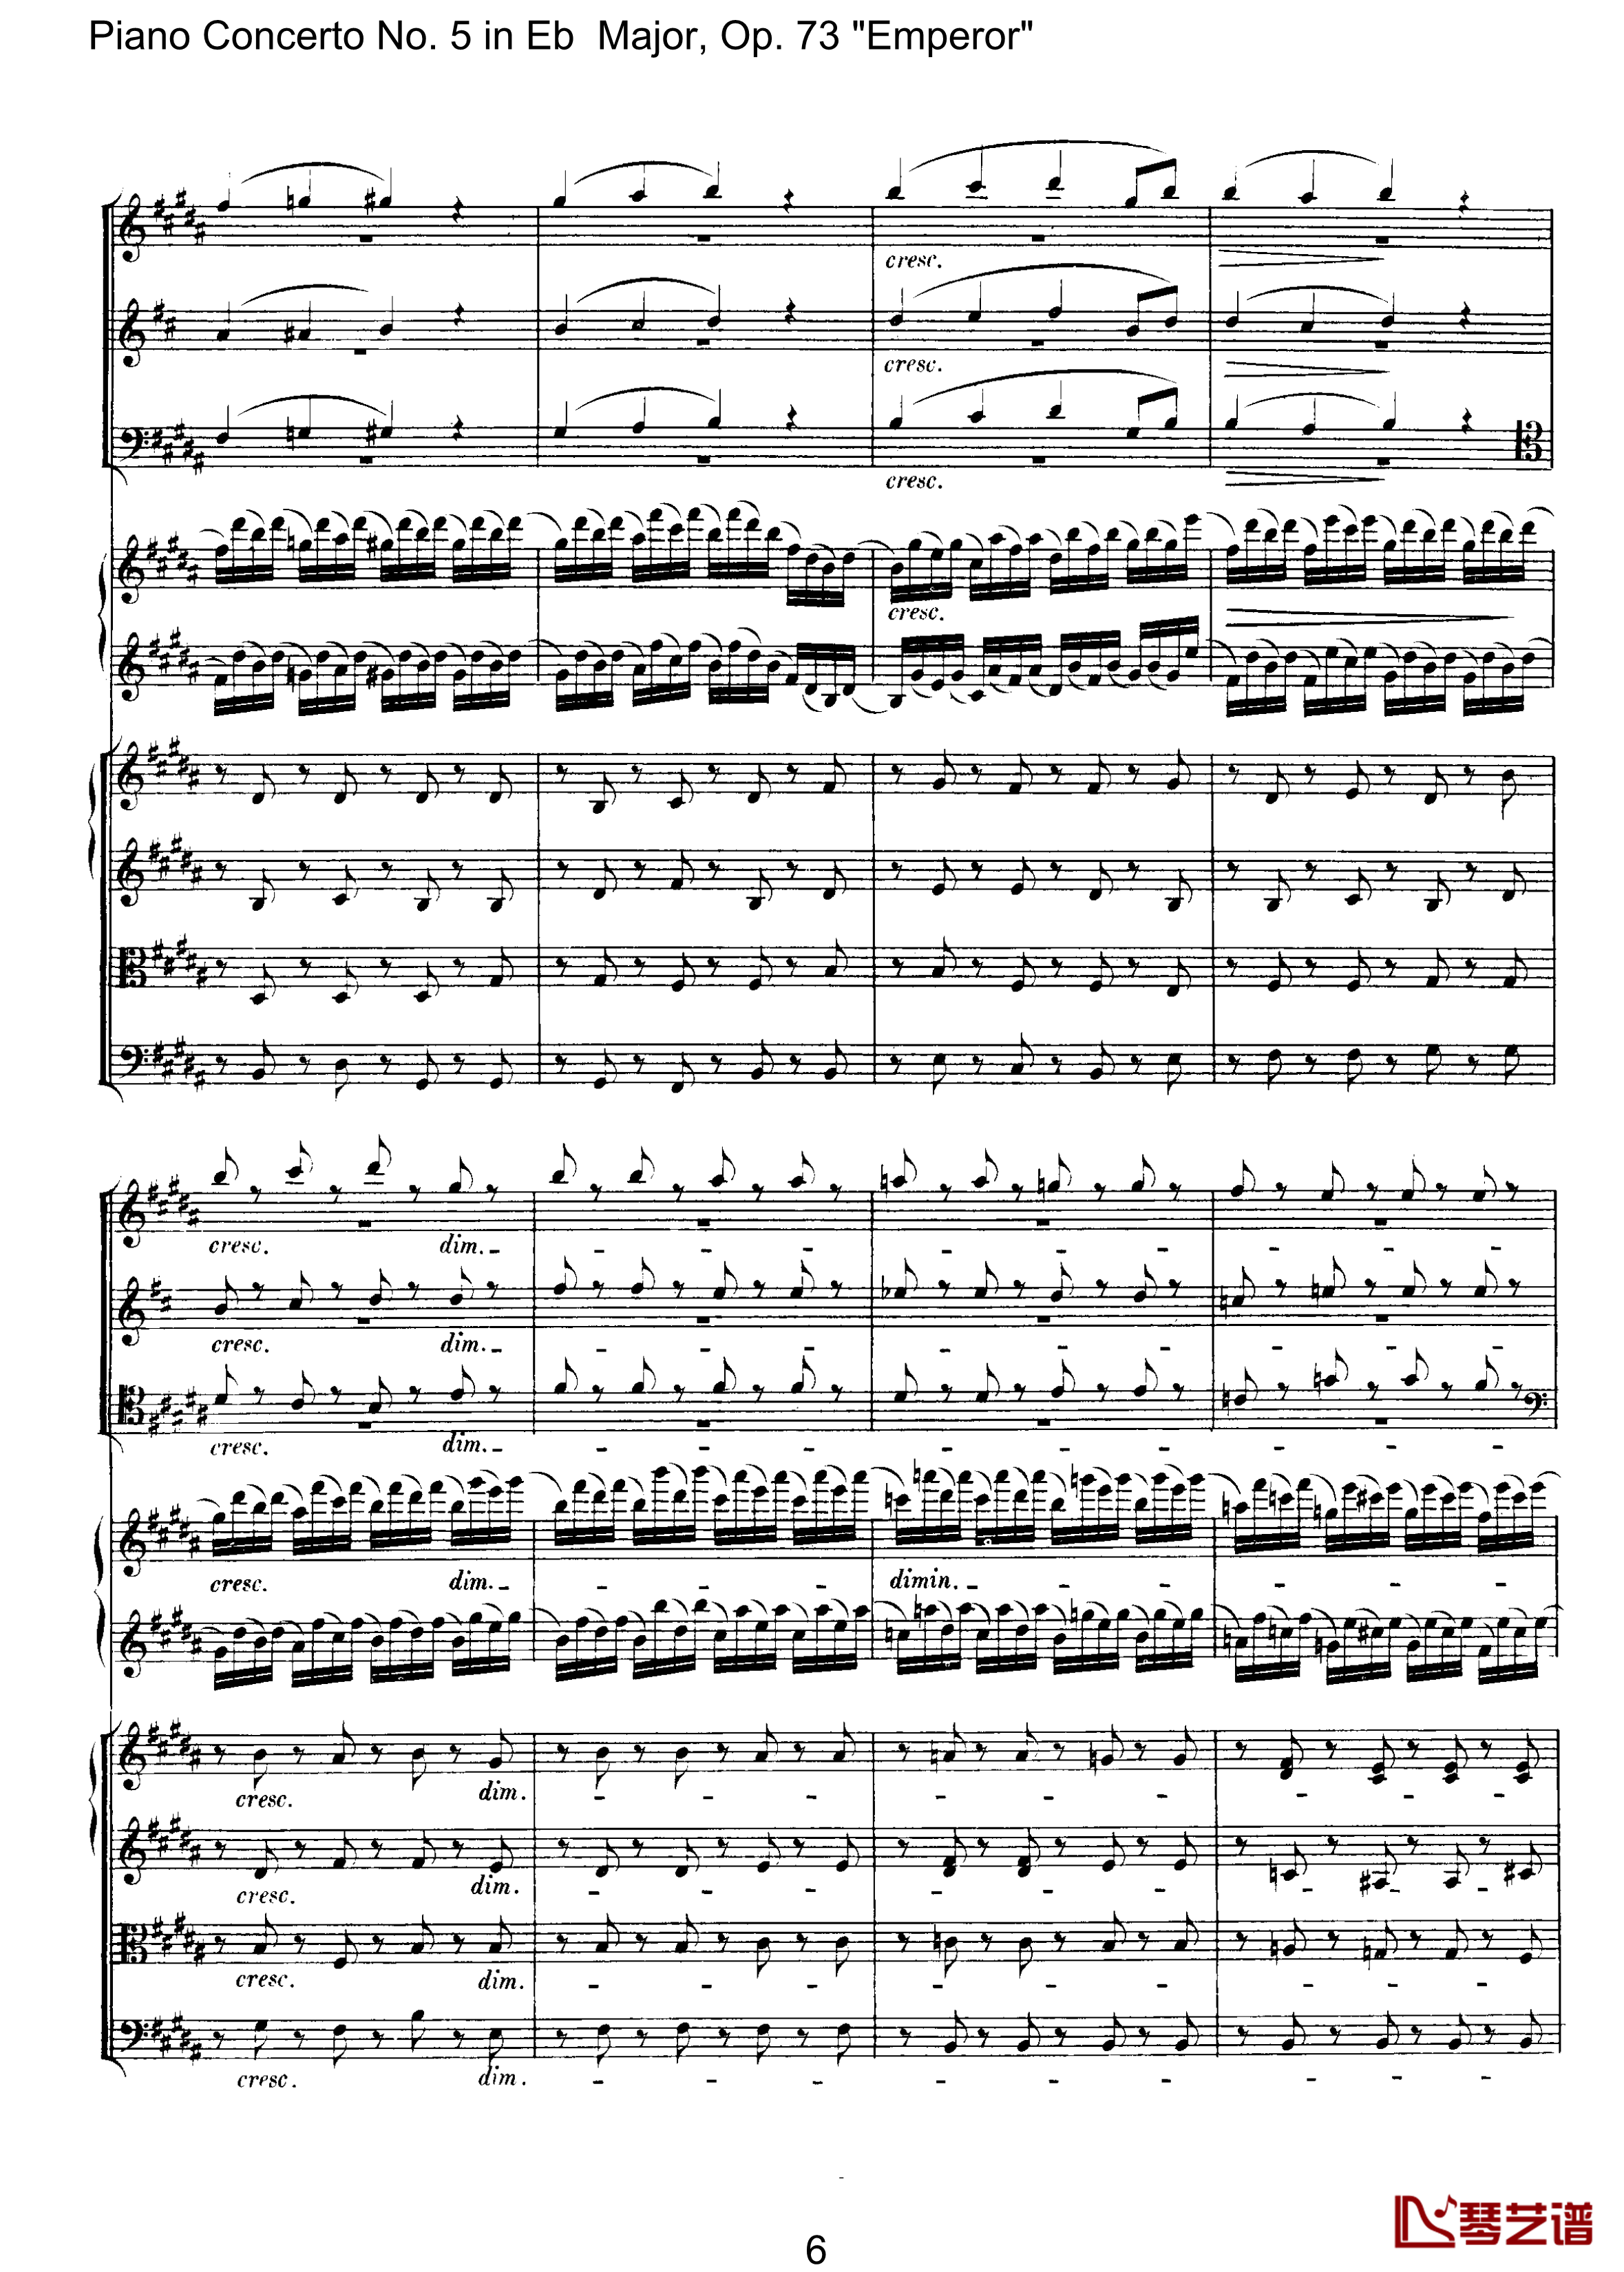 皇帝第二乐章钢琴谱-贝多芬-总谱-第五钢琴协奏曲beethoven6